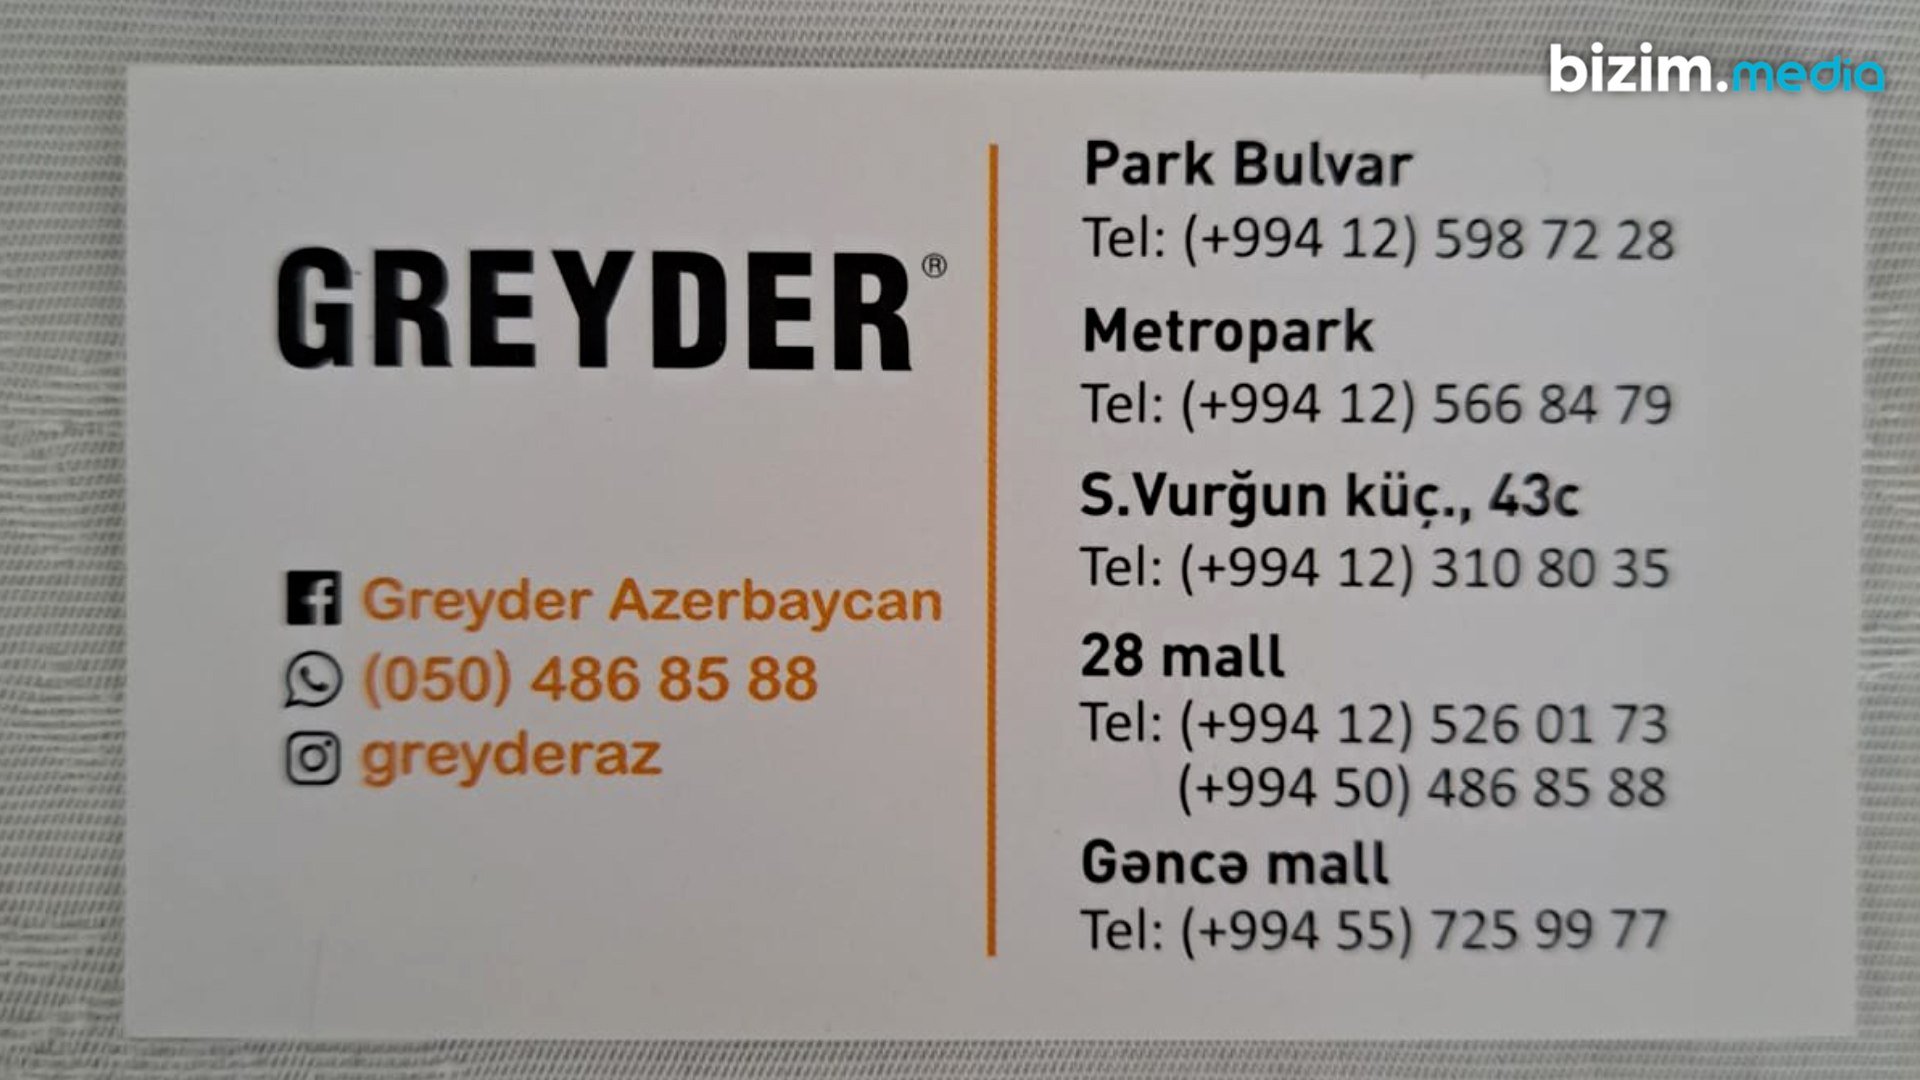 'GREYDER'in GEYDİRMƏ MALLARI... - GİLEY